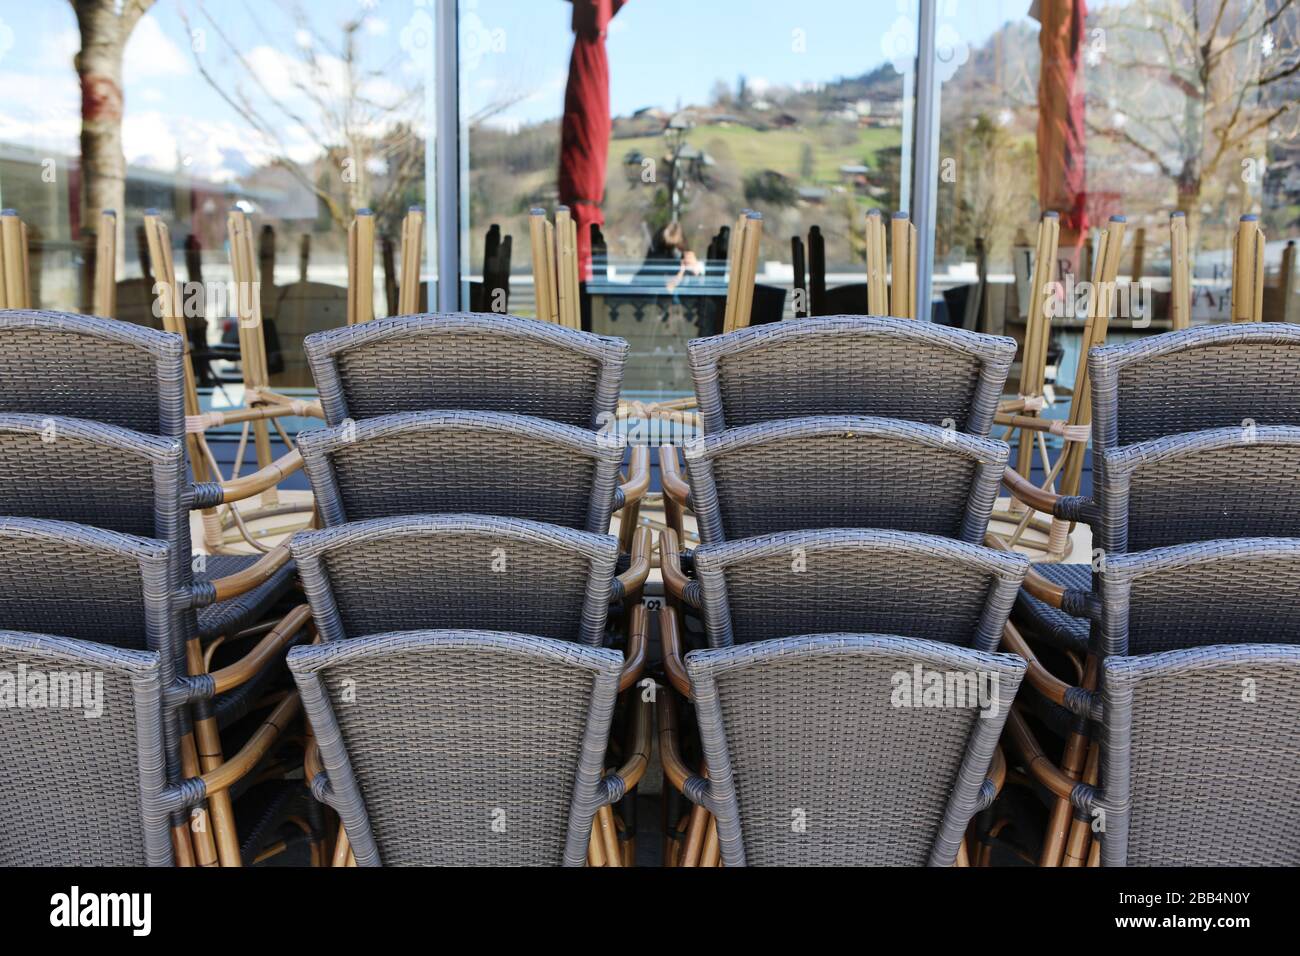 Chaises de bistrot entassées devant un restaurant. Fermeture administrative. Coronavirus. Covid-19. Saint-Gervais-les-Bains. Haute-Savoie. France. Stock Photo